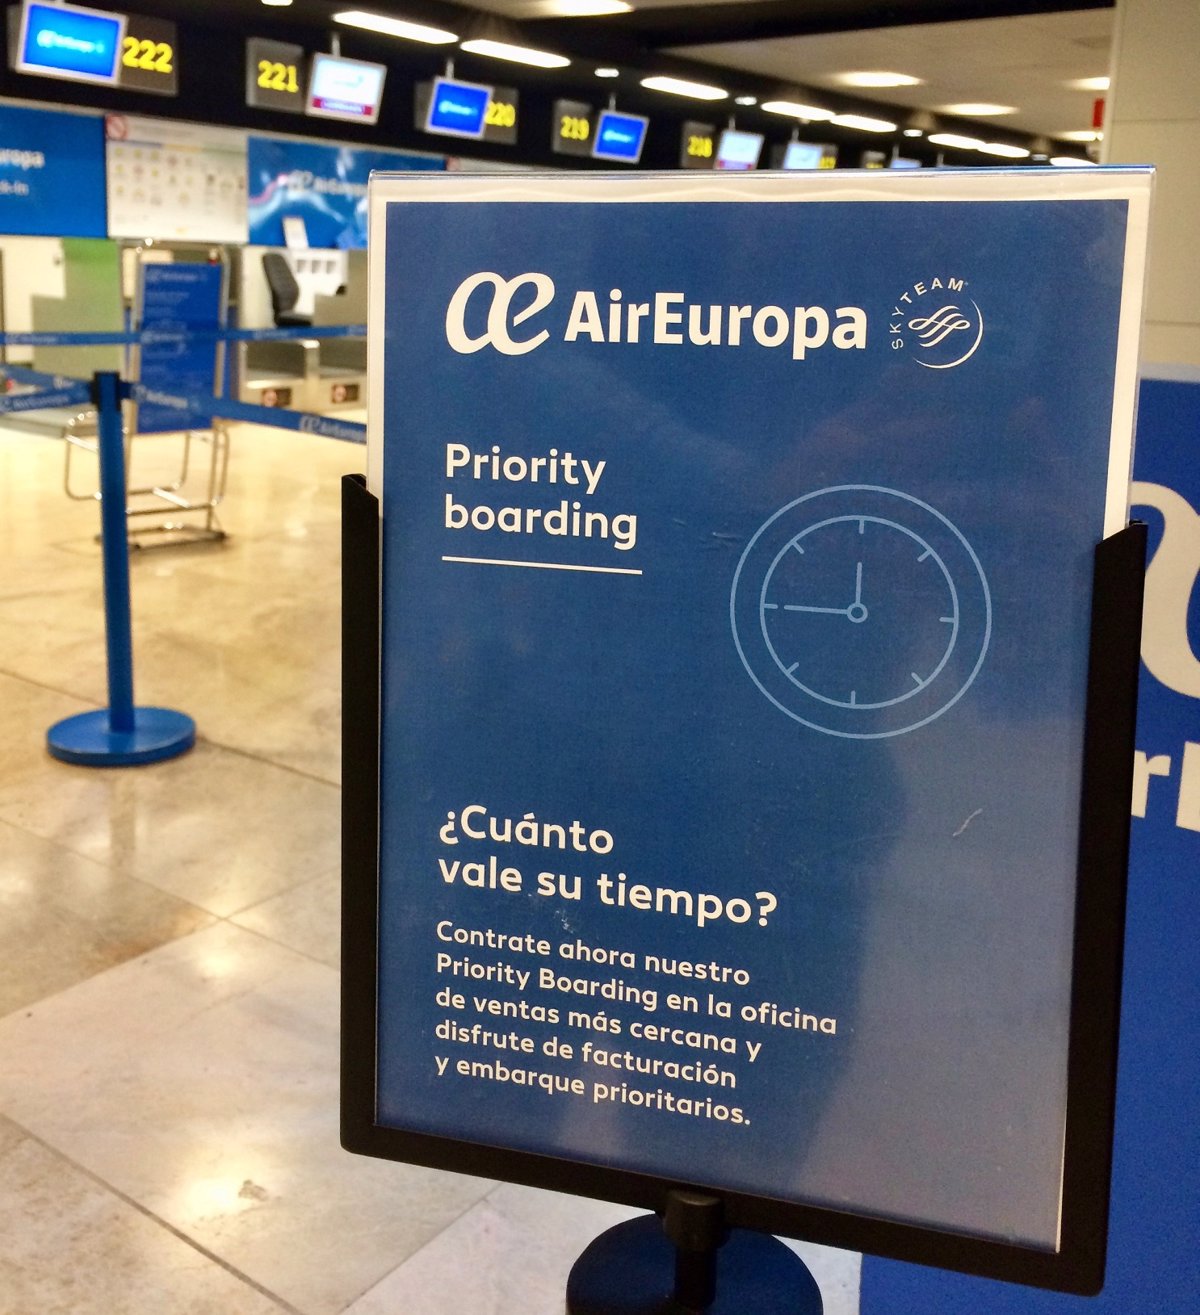 Air Europa amplía su de facturación y prioritarios